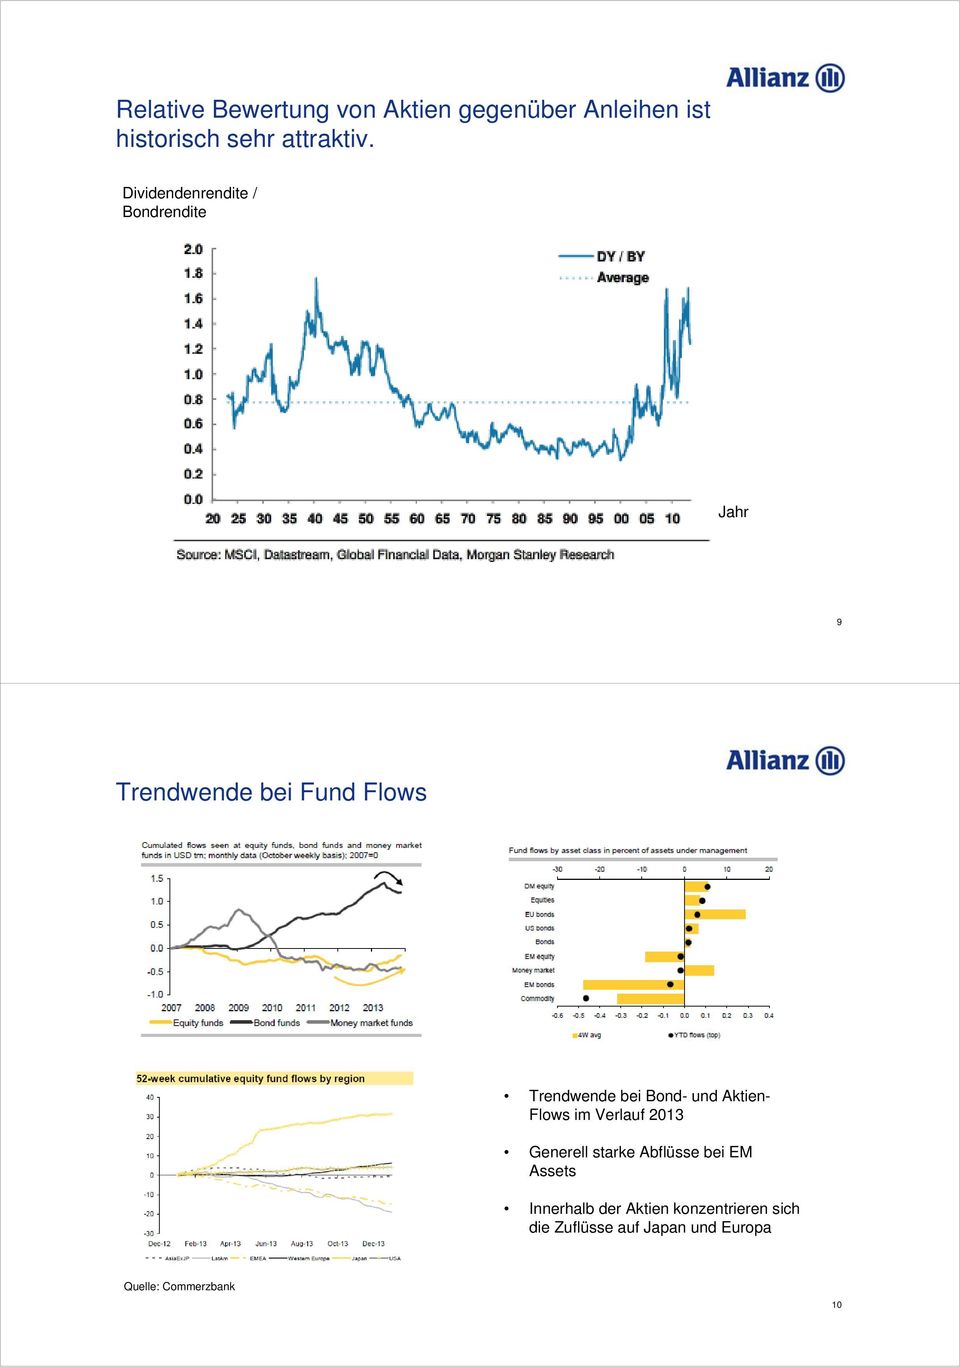 Bond- und Aktien- Flows im Verlauf 2013 Generell starke Abflüsse bei EM Assets